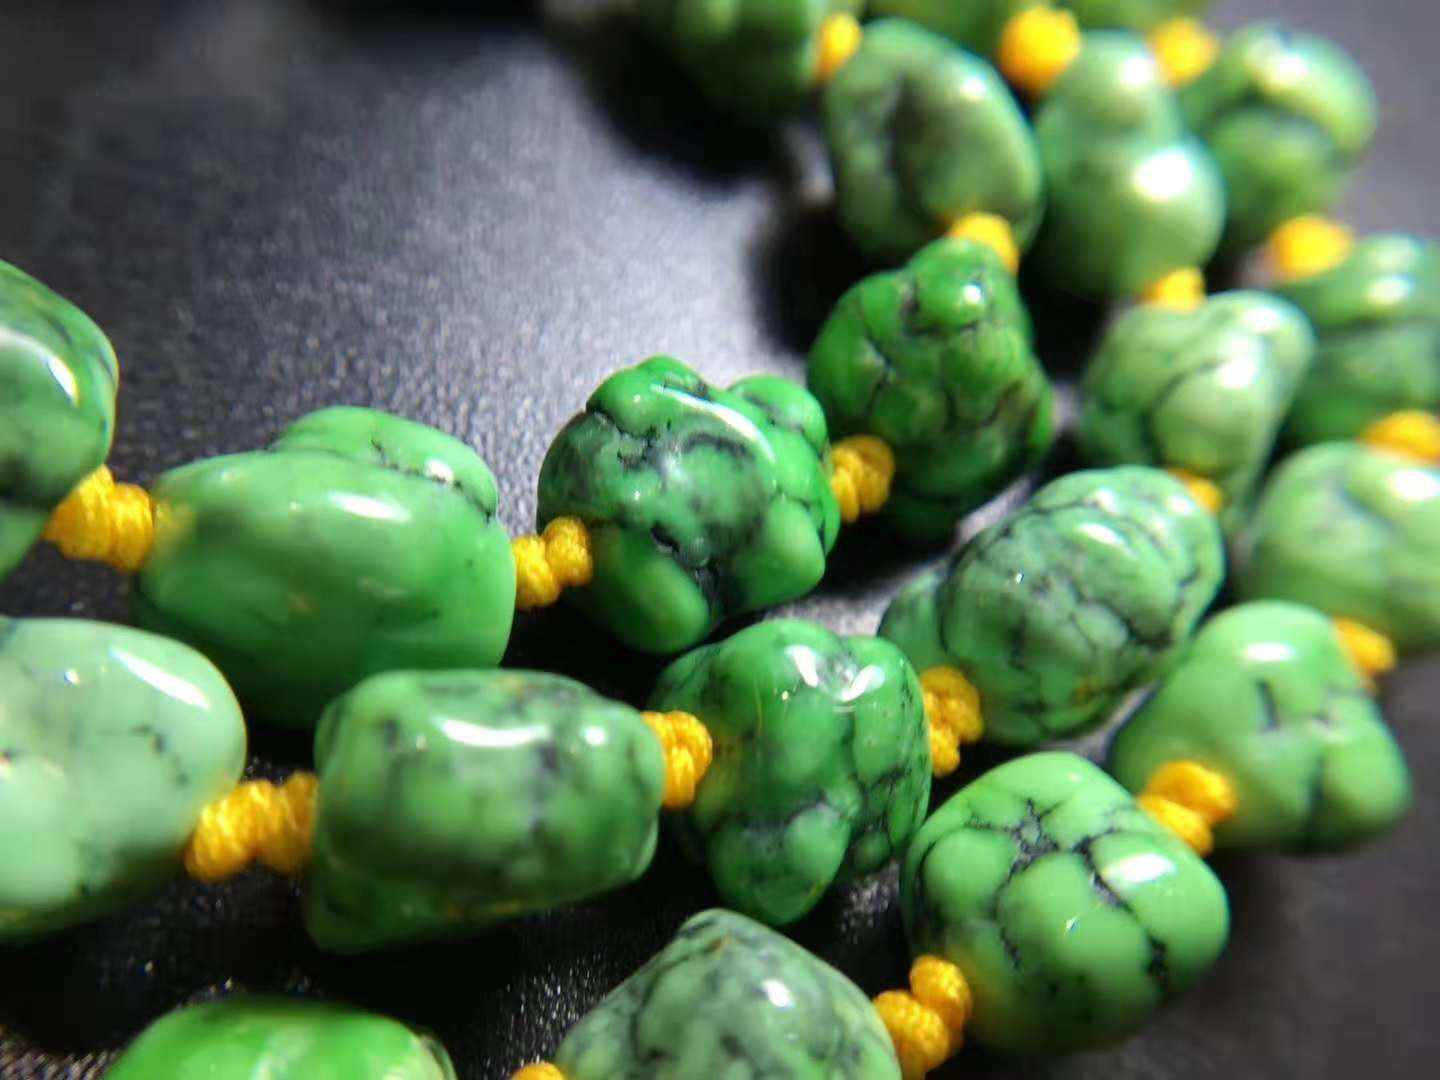 绿松欣赏:绿松石的这些颜色,你都见过吗?